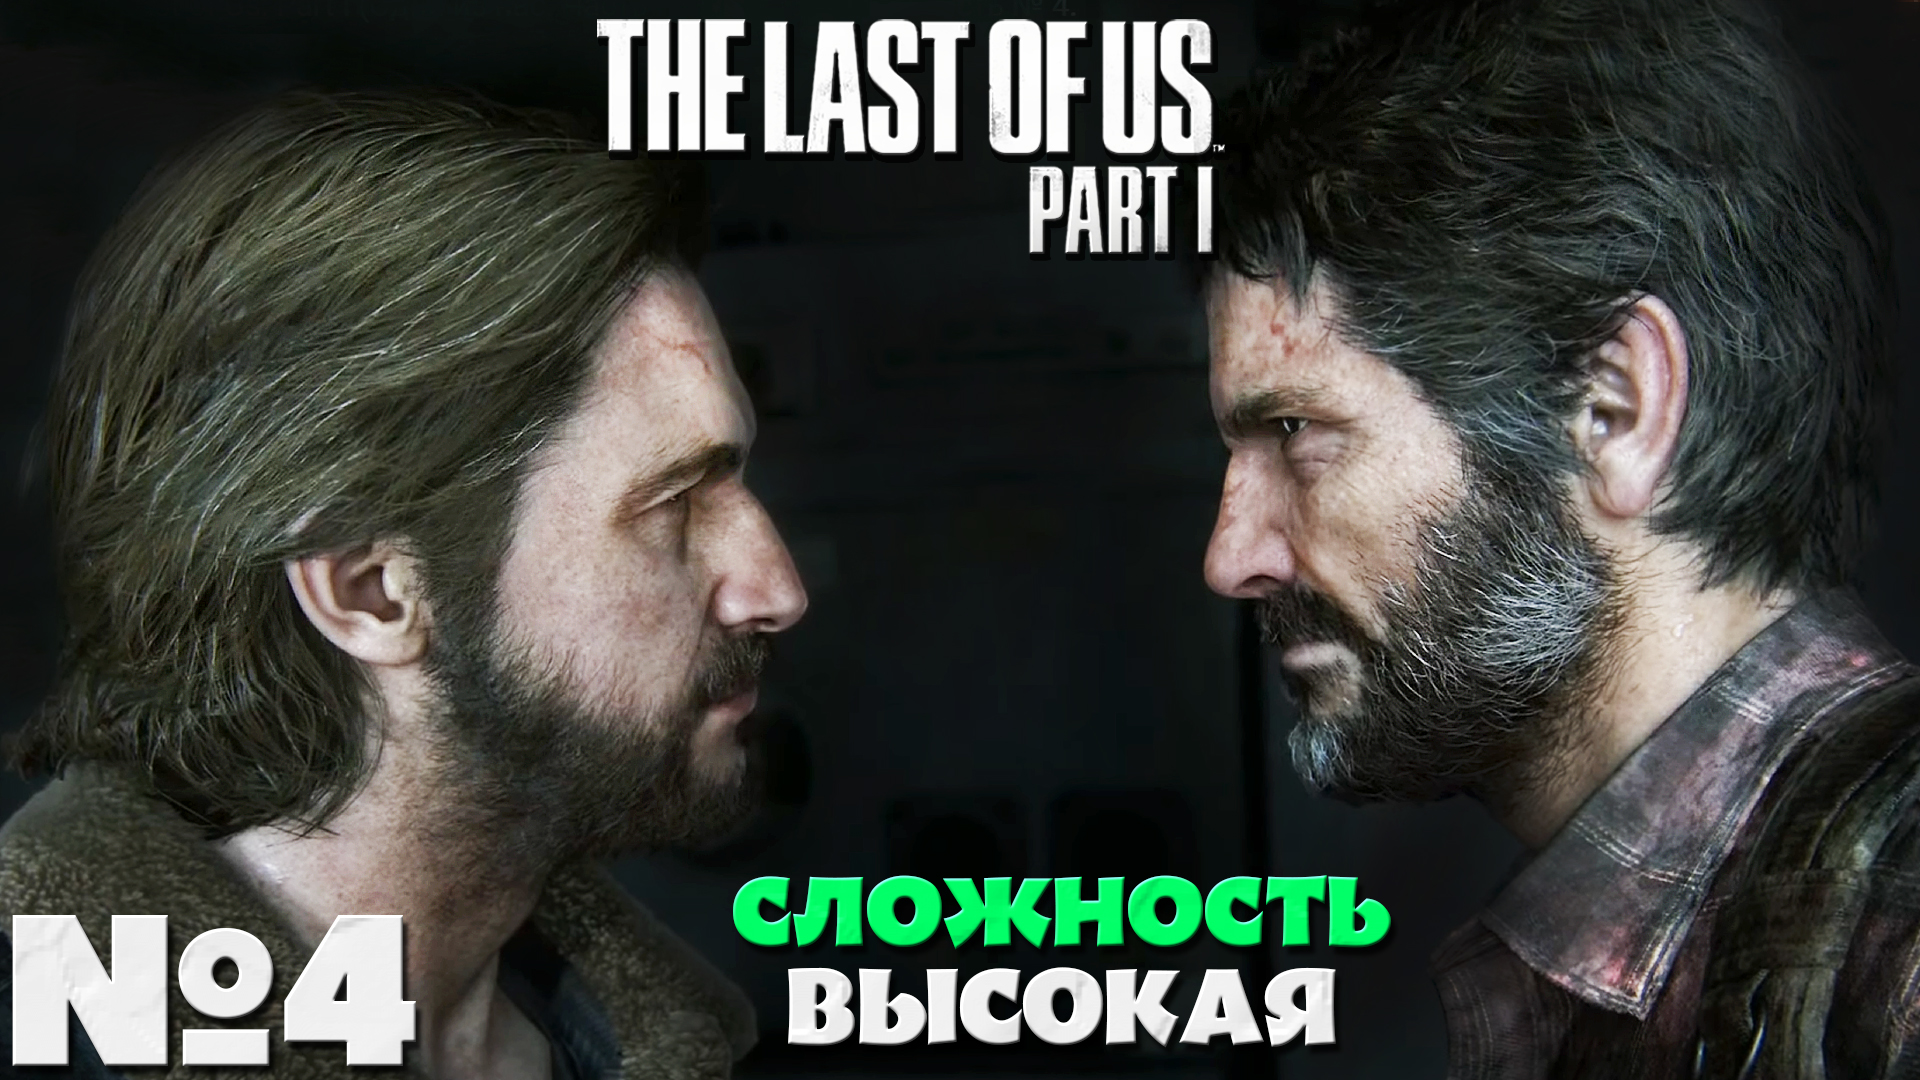 The Last of Us Part I (Одни из нас Часть I) - Прохождение. Часть № 4. Сложность Высокая.